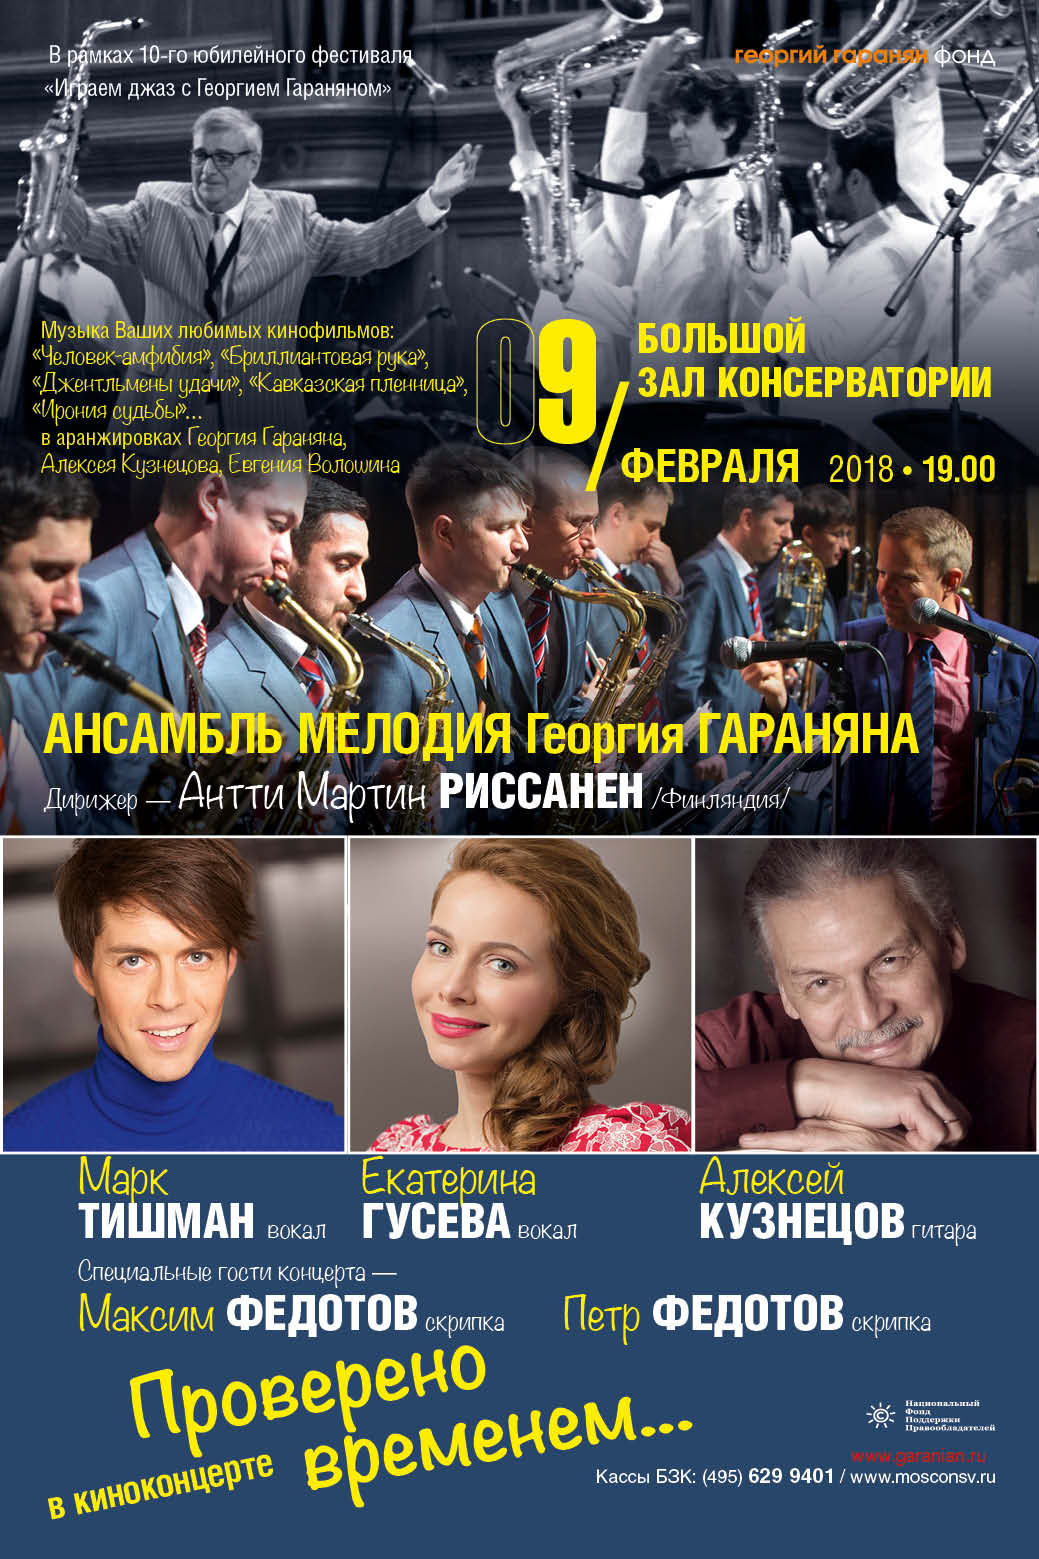 Концерт «Проверено временем. Музыка любимых фильмов» – события на сайте «Московские Сезоны»